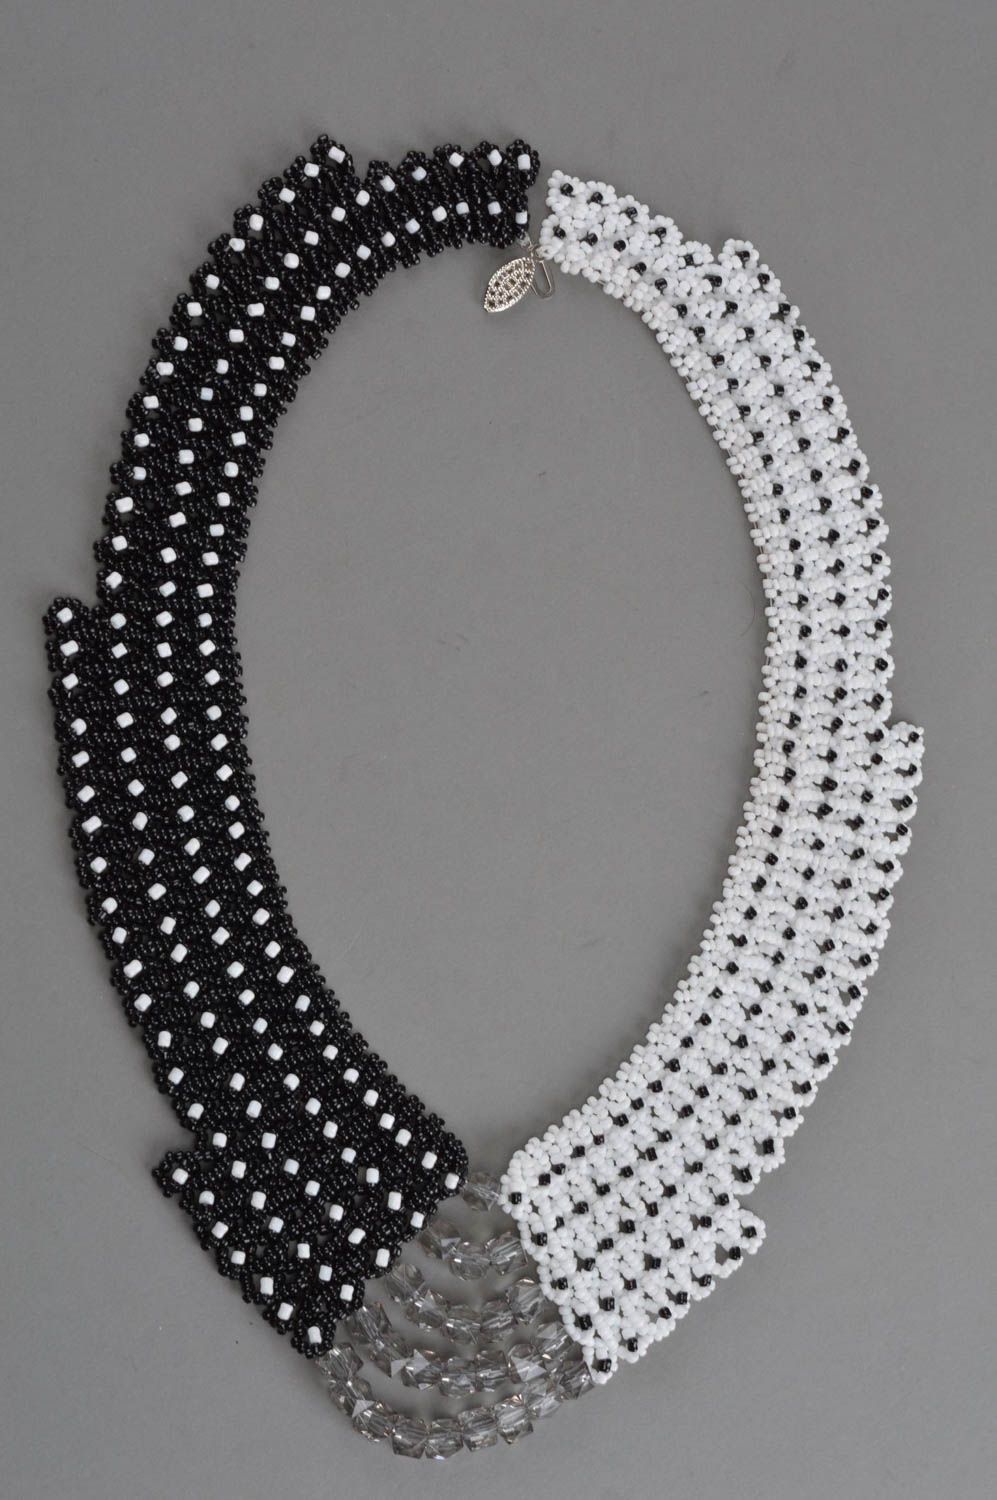 Handmade Collier aus Glasperlen in Schwarz und Weiß mit Metallfurnitur für Damen foto 3